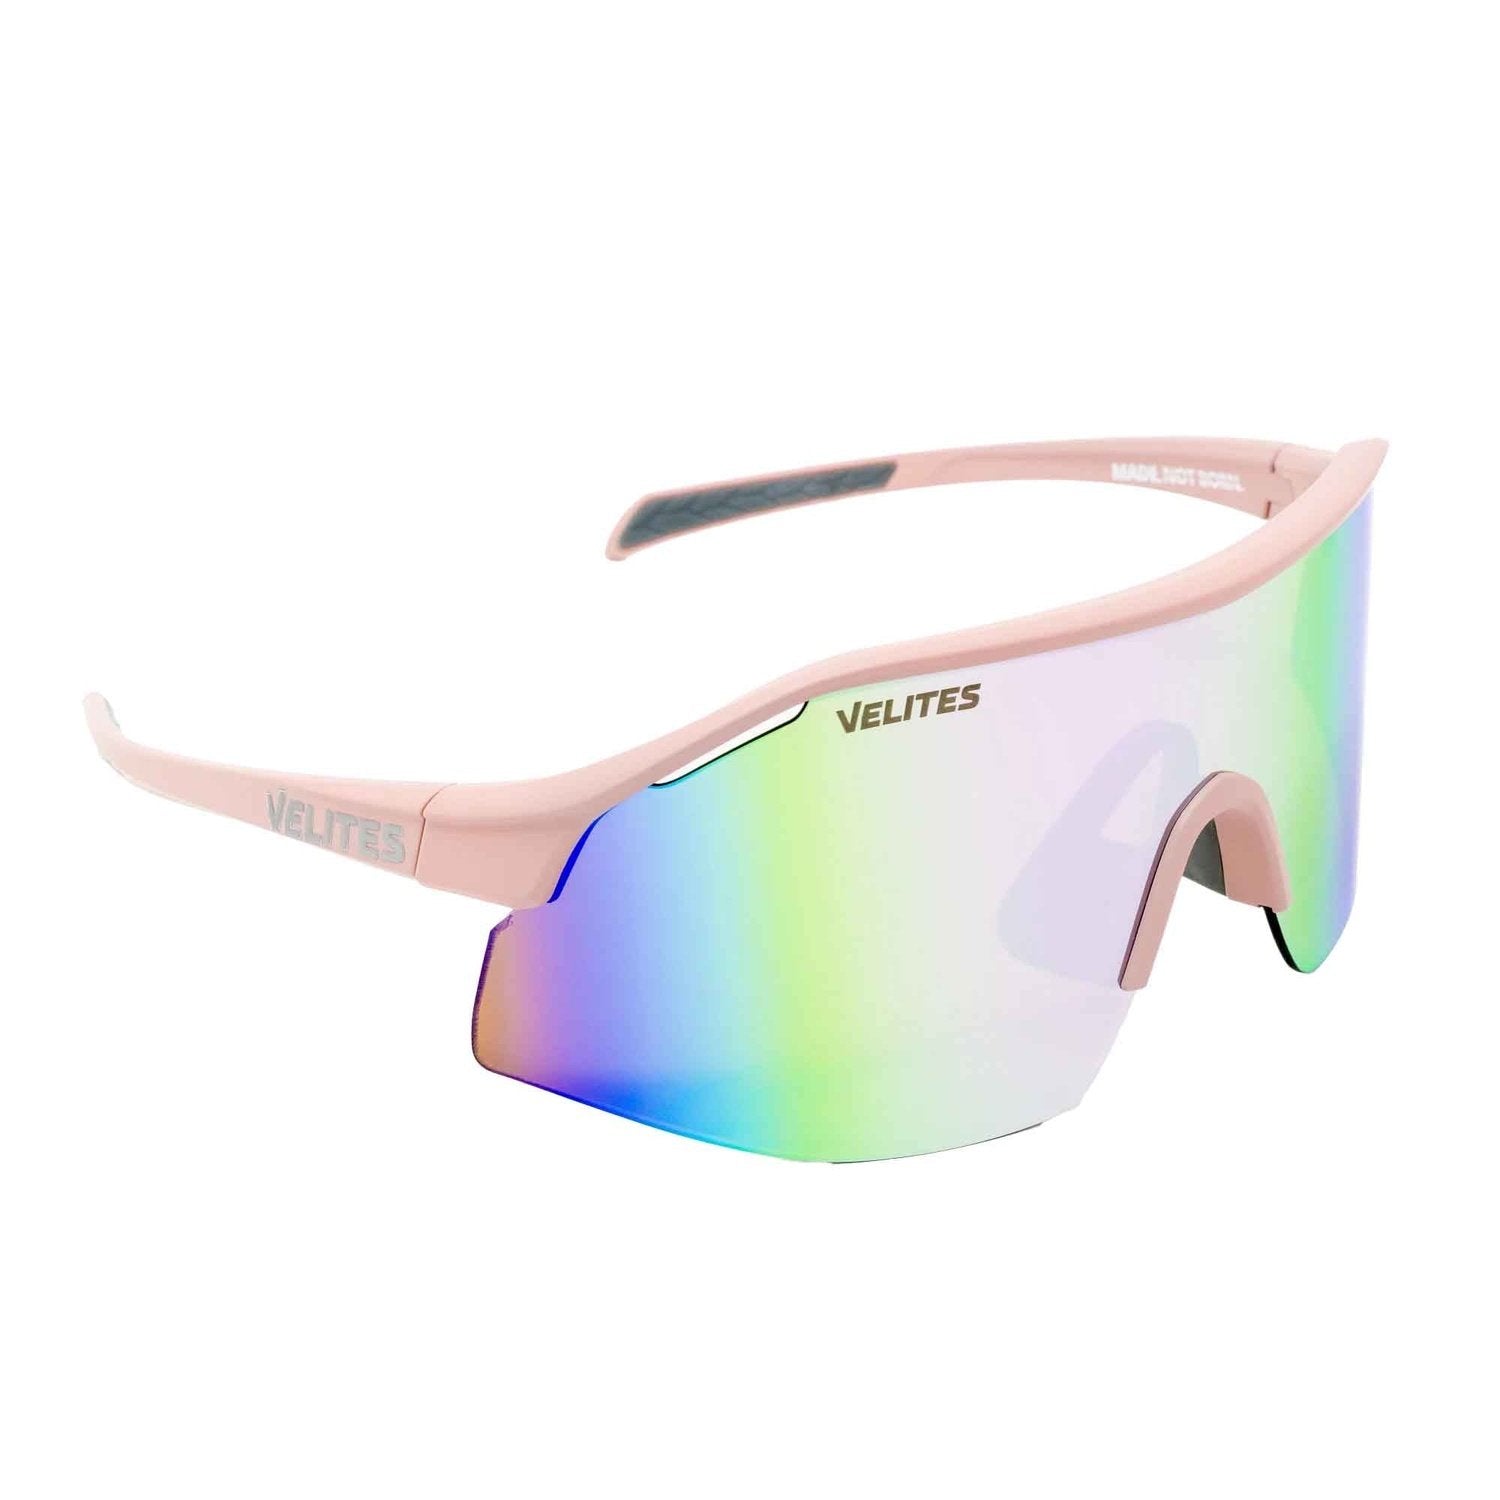 Velites Sonnenbrille "Raptor Sport" Pink/Rosegold kaufen bei HighPowered.ch